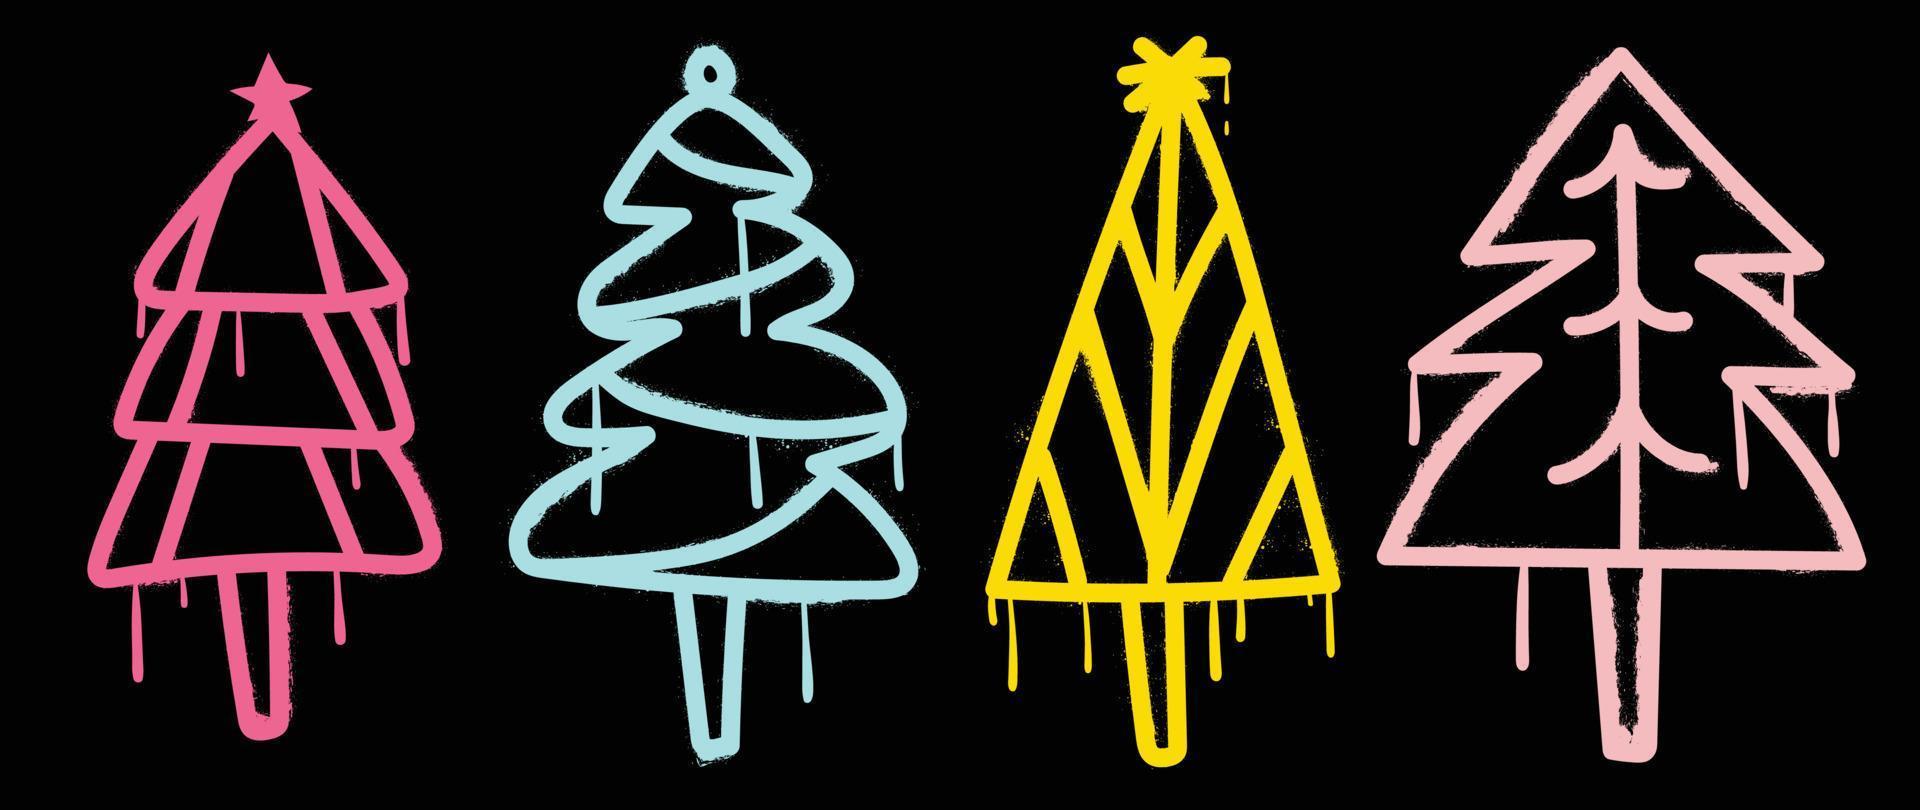 conjunto de elementos navideños vector de pintura en aerosol. graffiti, grunge, elementos brillantes de pintura en aerosol árboles de navidad, flujo de tinta sobre fondo negro. ilustración de diseño para decoración, tarjeta, pegatina.